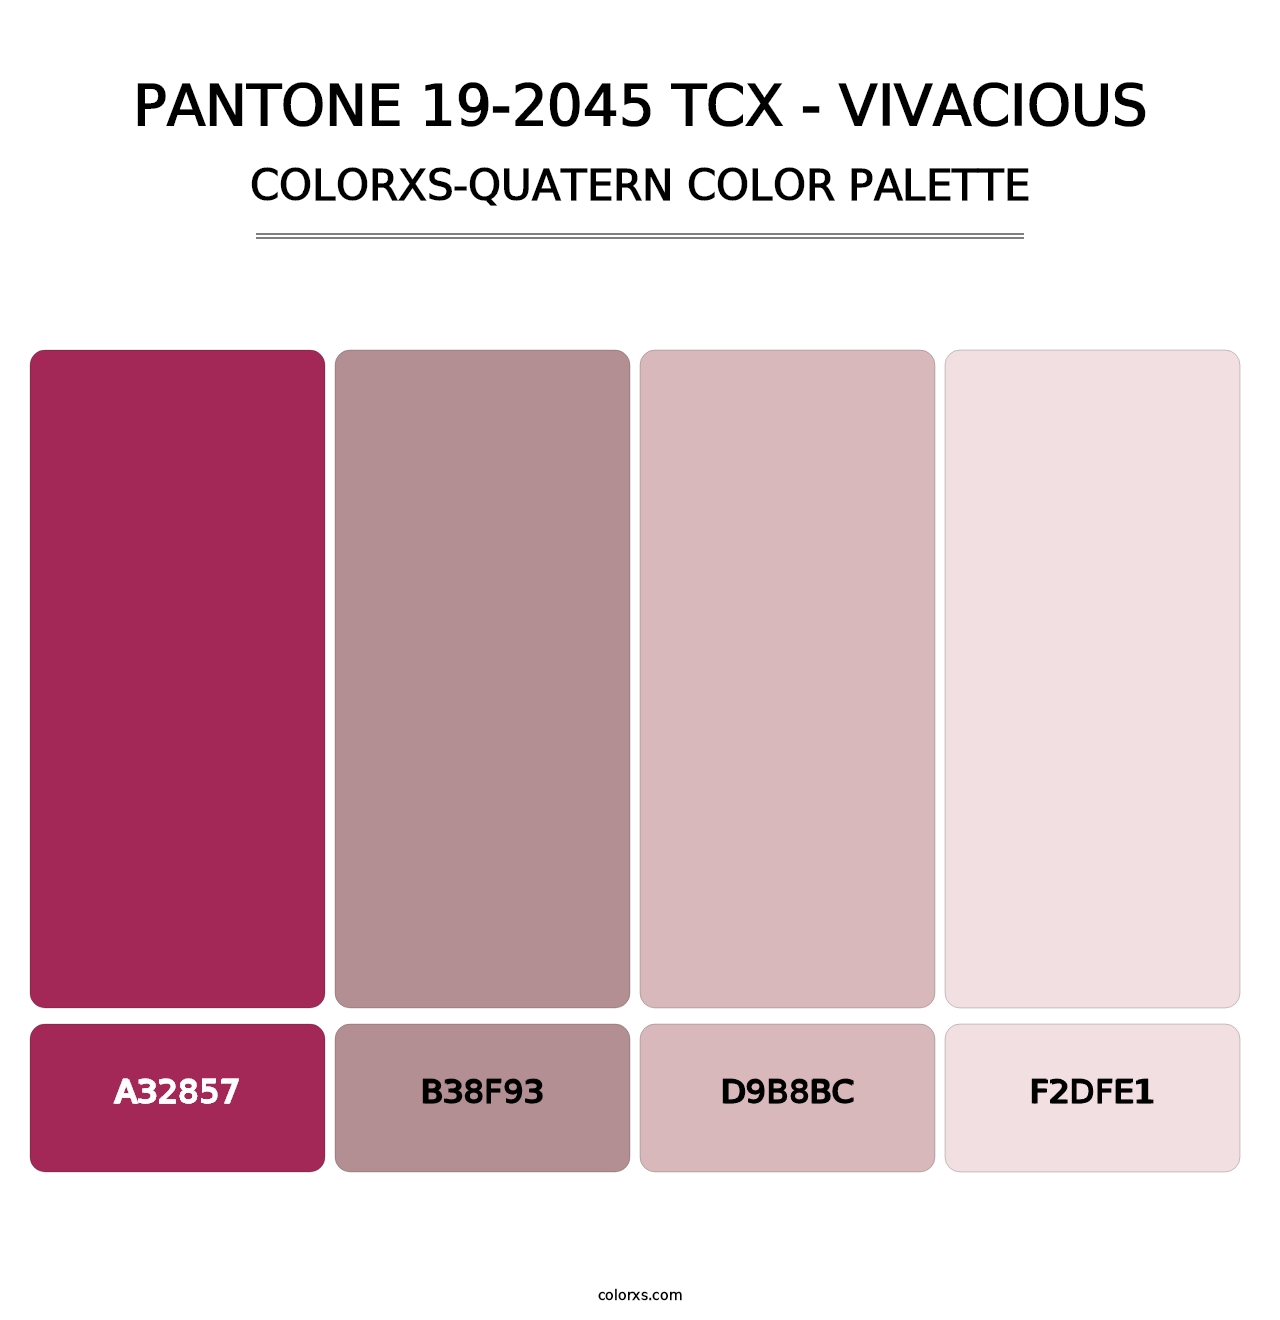 PANTONE 19-2045 TCX - Vivacious - Colorxs Quatern Palette